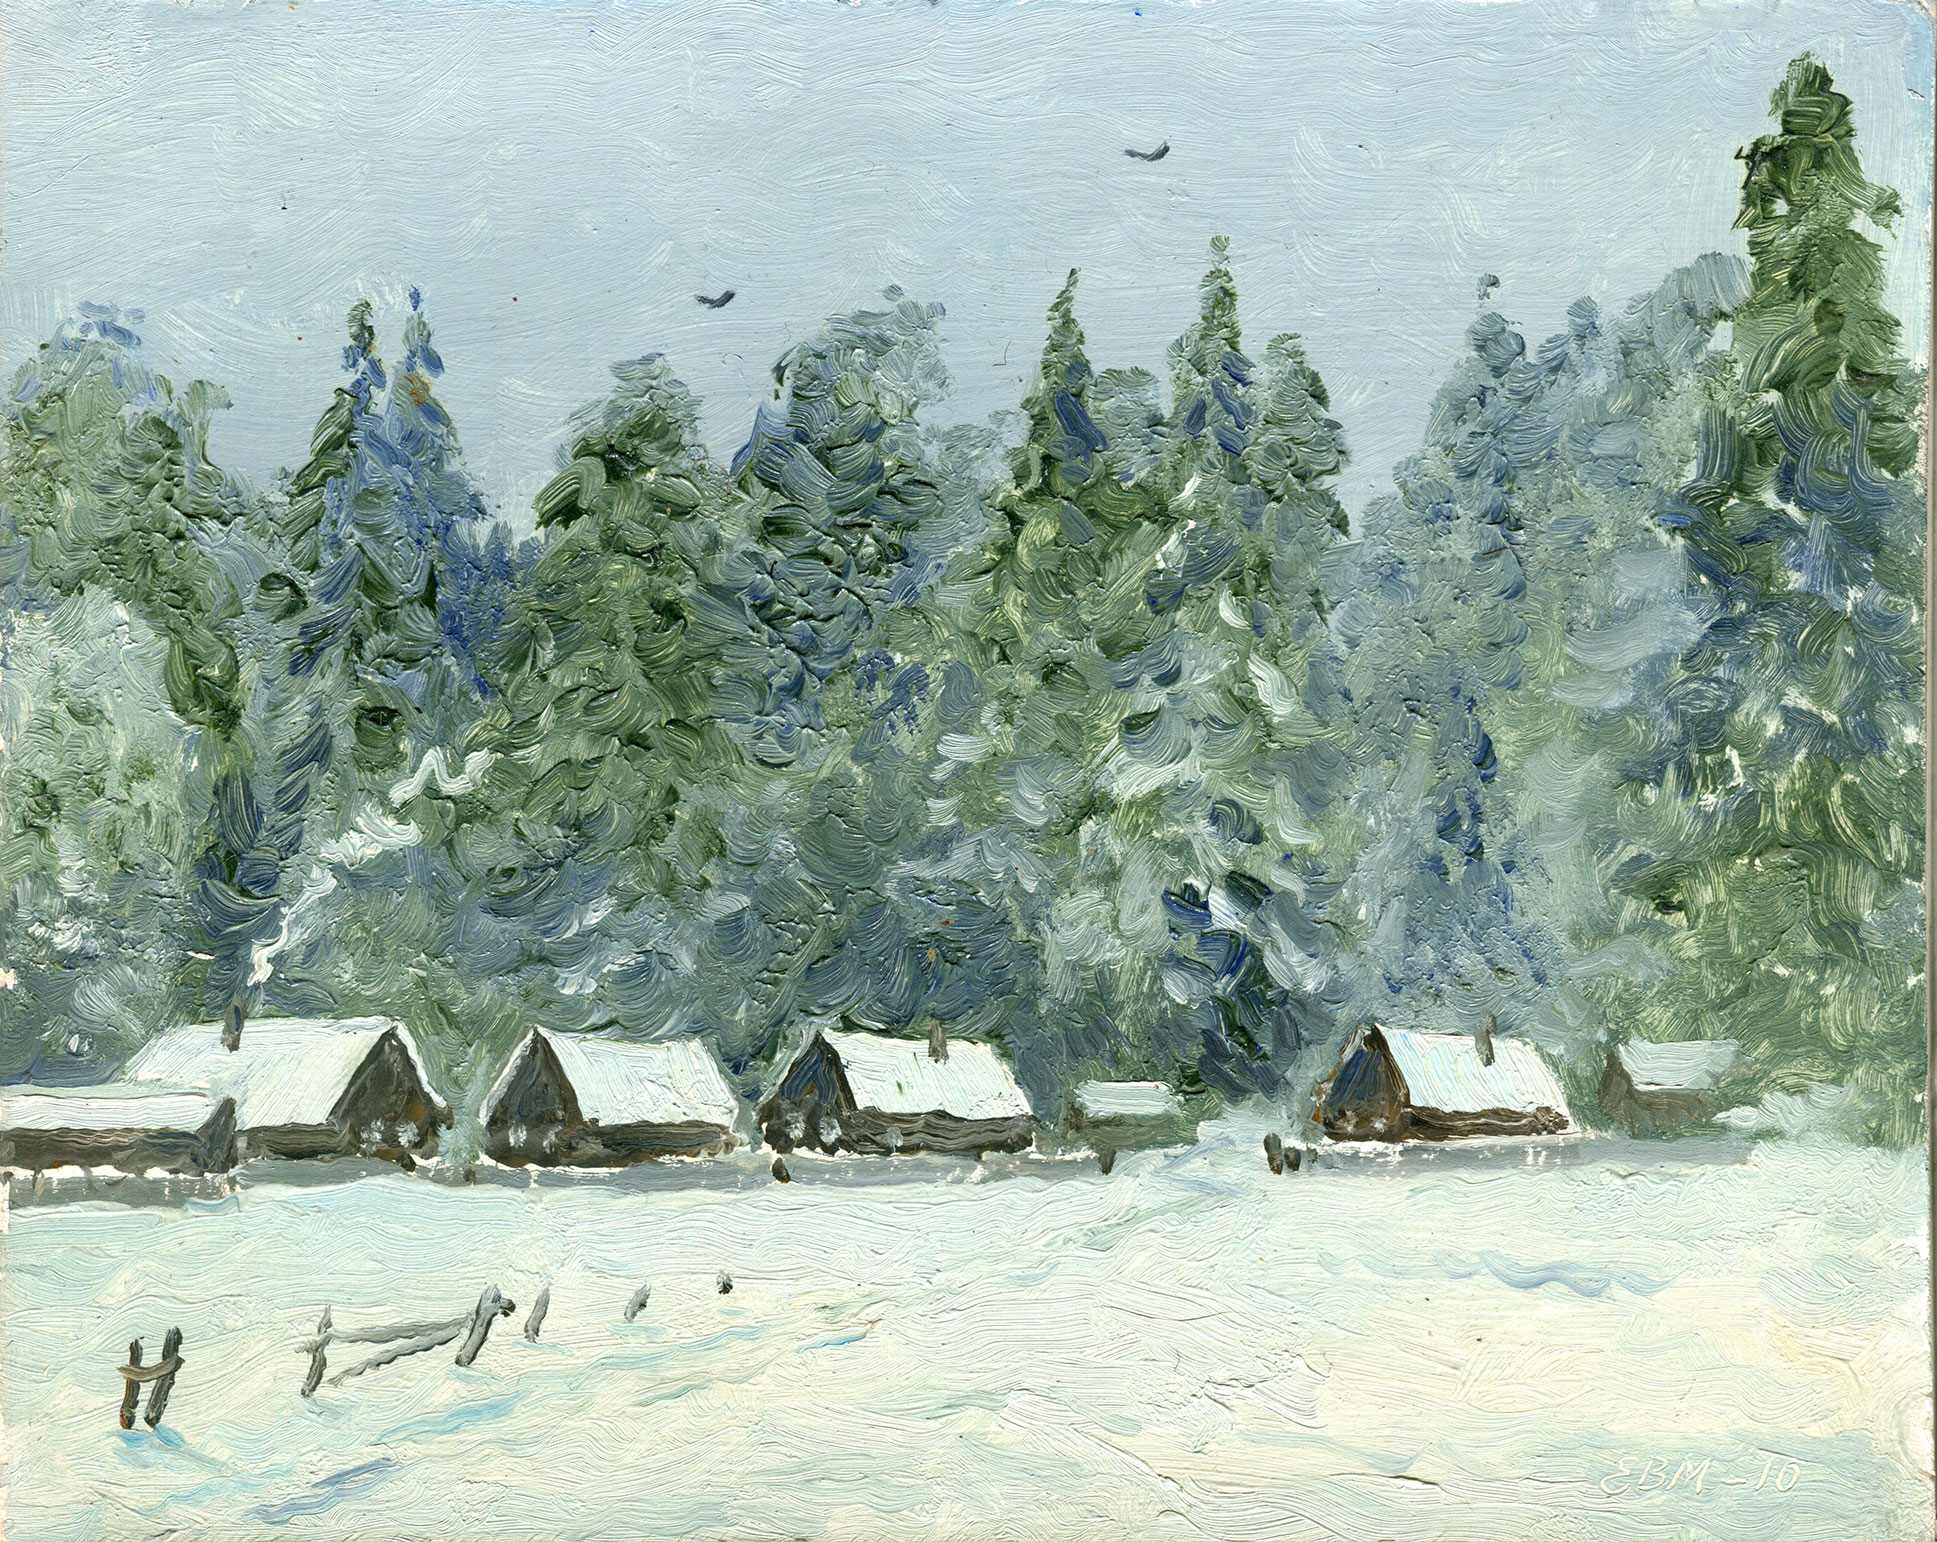  冬天的村庄 - 1,  瓦倫丁·埃夫雷莫夫, 买画 油